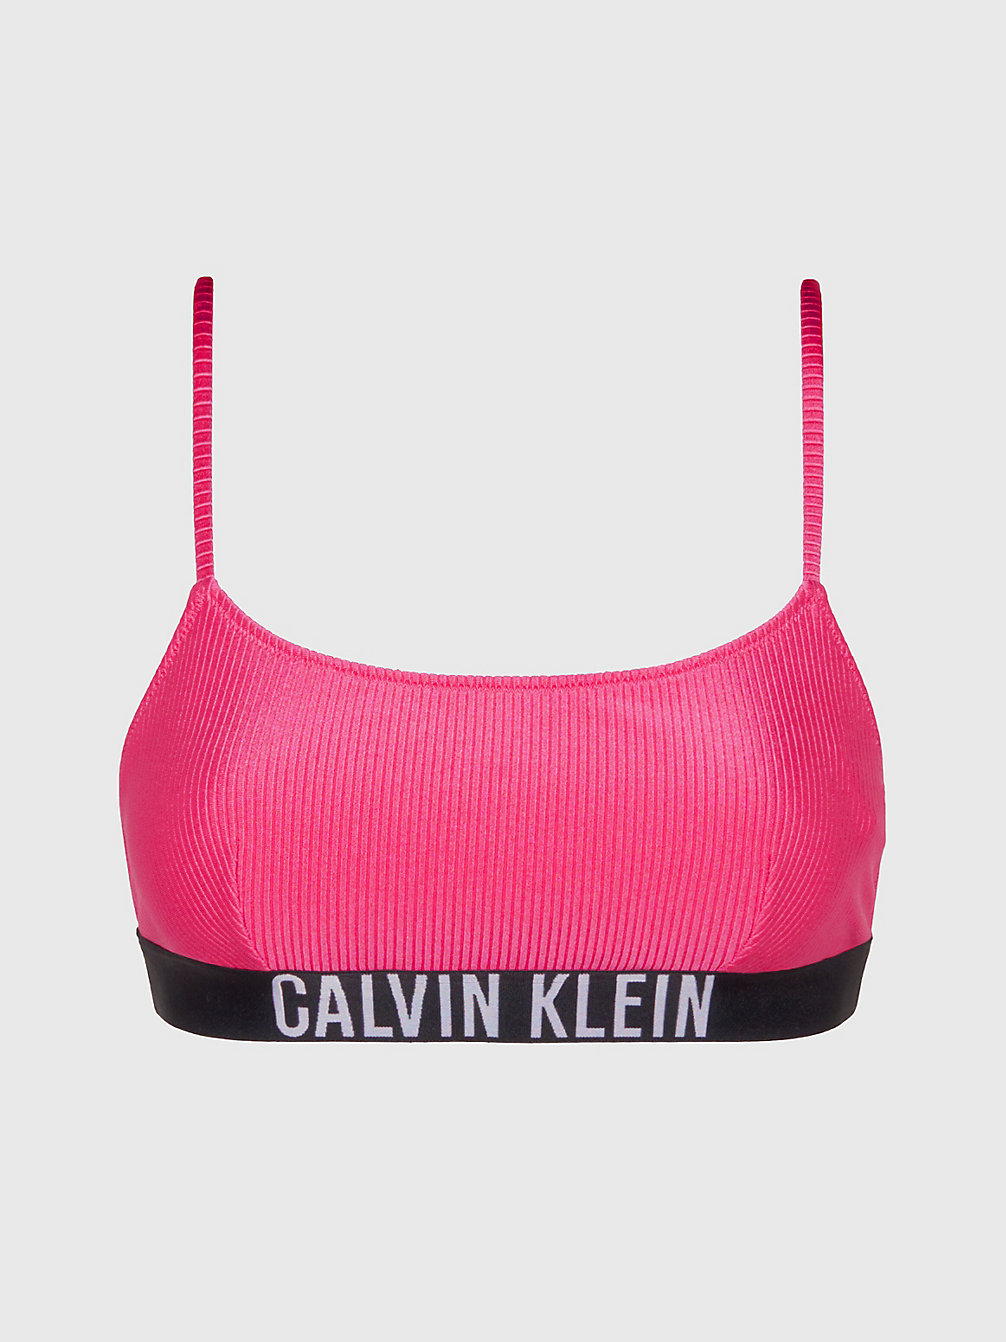 PINK FLASH Bralette Bikini Top - Intense Power undefined women Calvin Klein